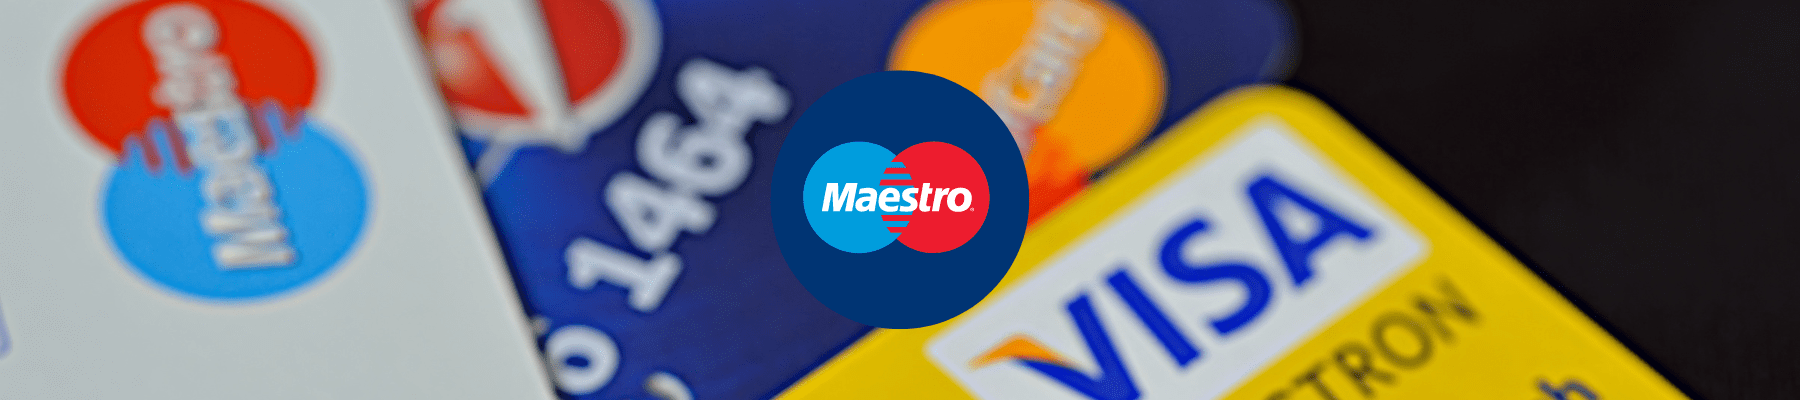 Maestro-Aus - Wie gestaltet sich die Kartenzahlung zukünftig in meinem Unternehmen? | Bild: Canva